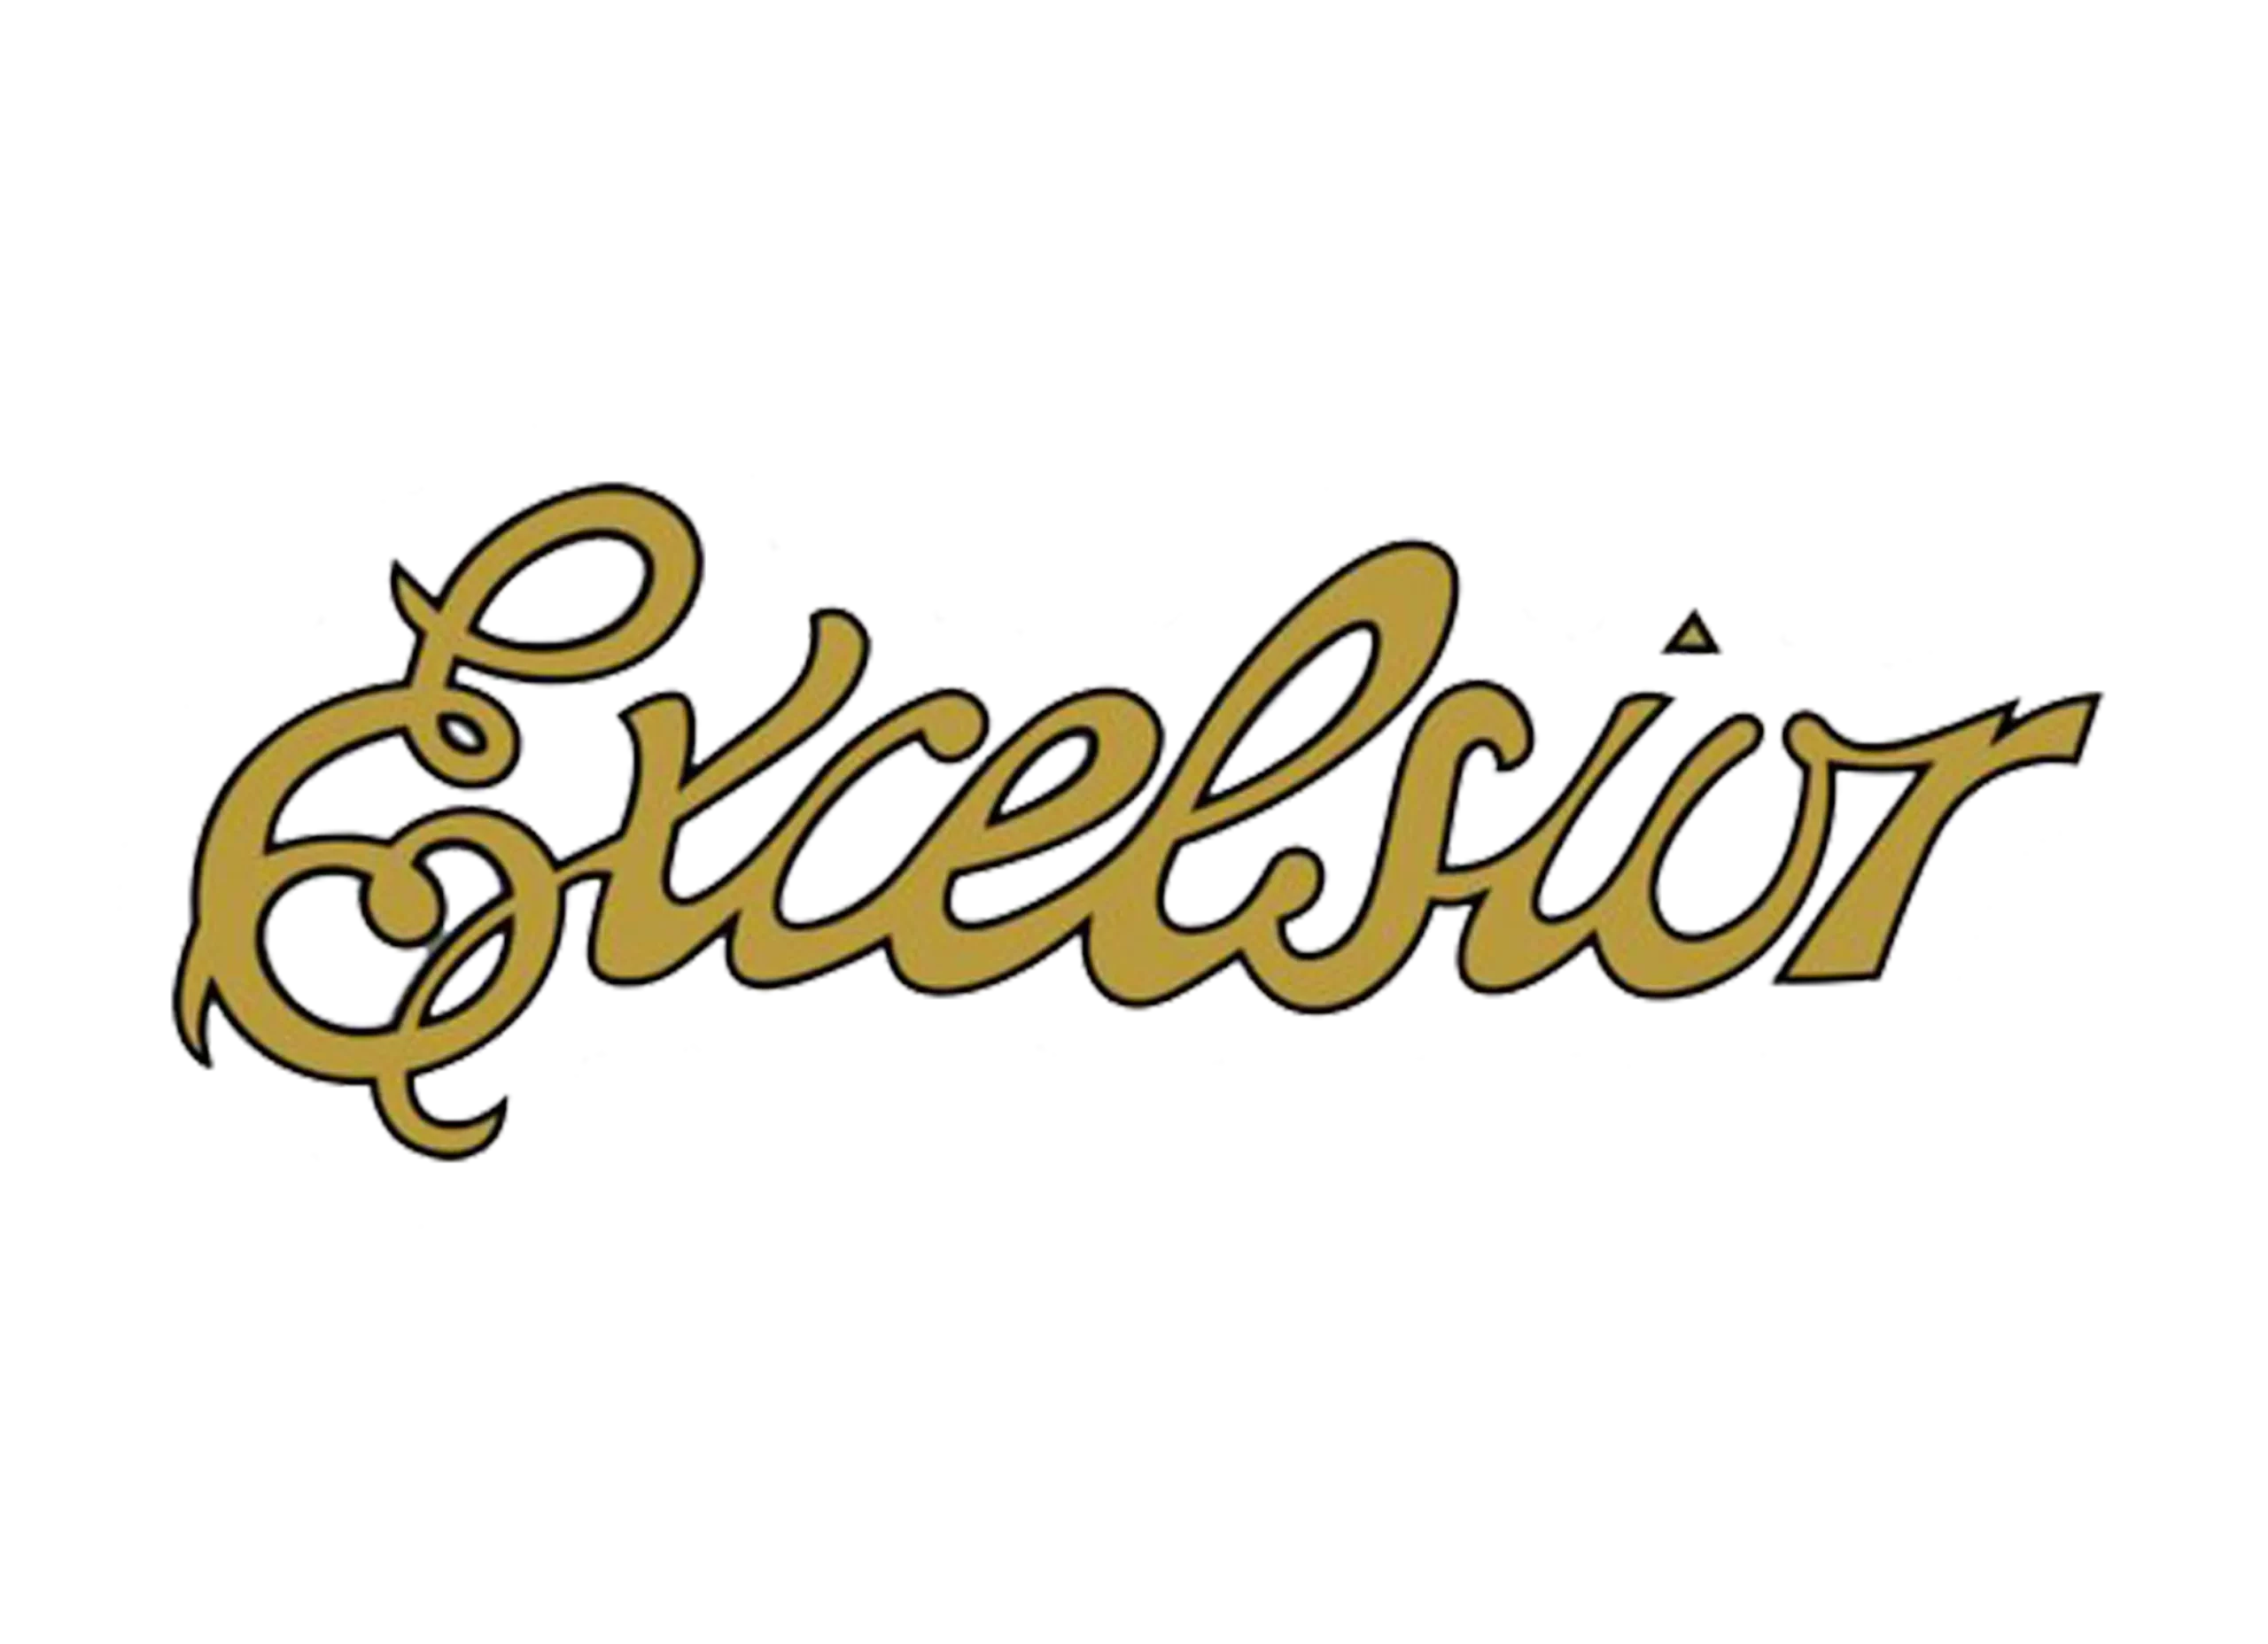 Excelsior logo 1908